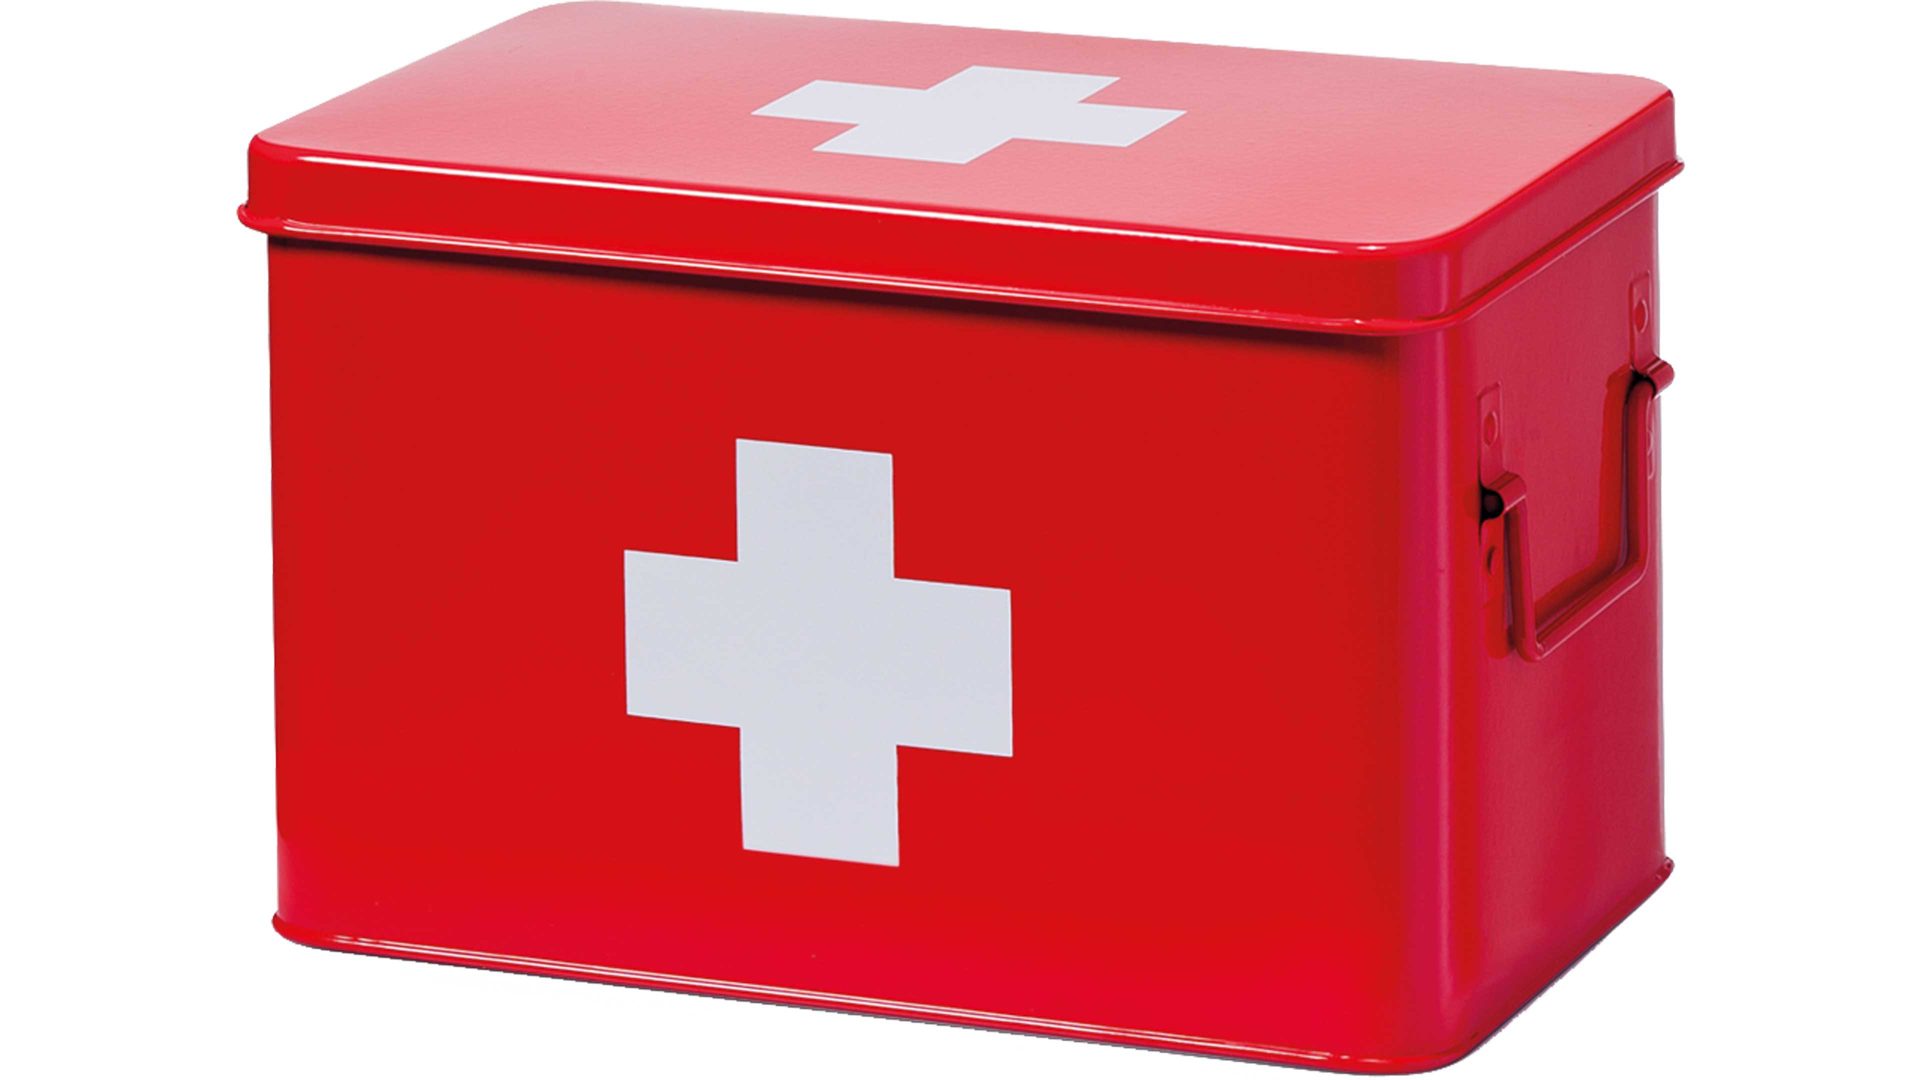 Medizinbox & Hausapotheke, rotes Metall - ca. 32 x 20 cm, Herxheim